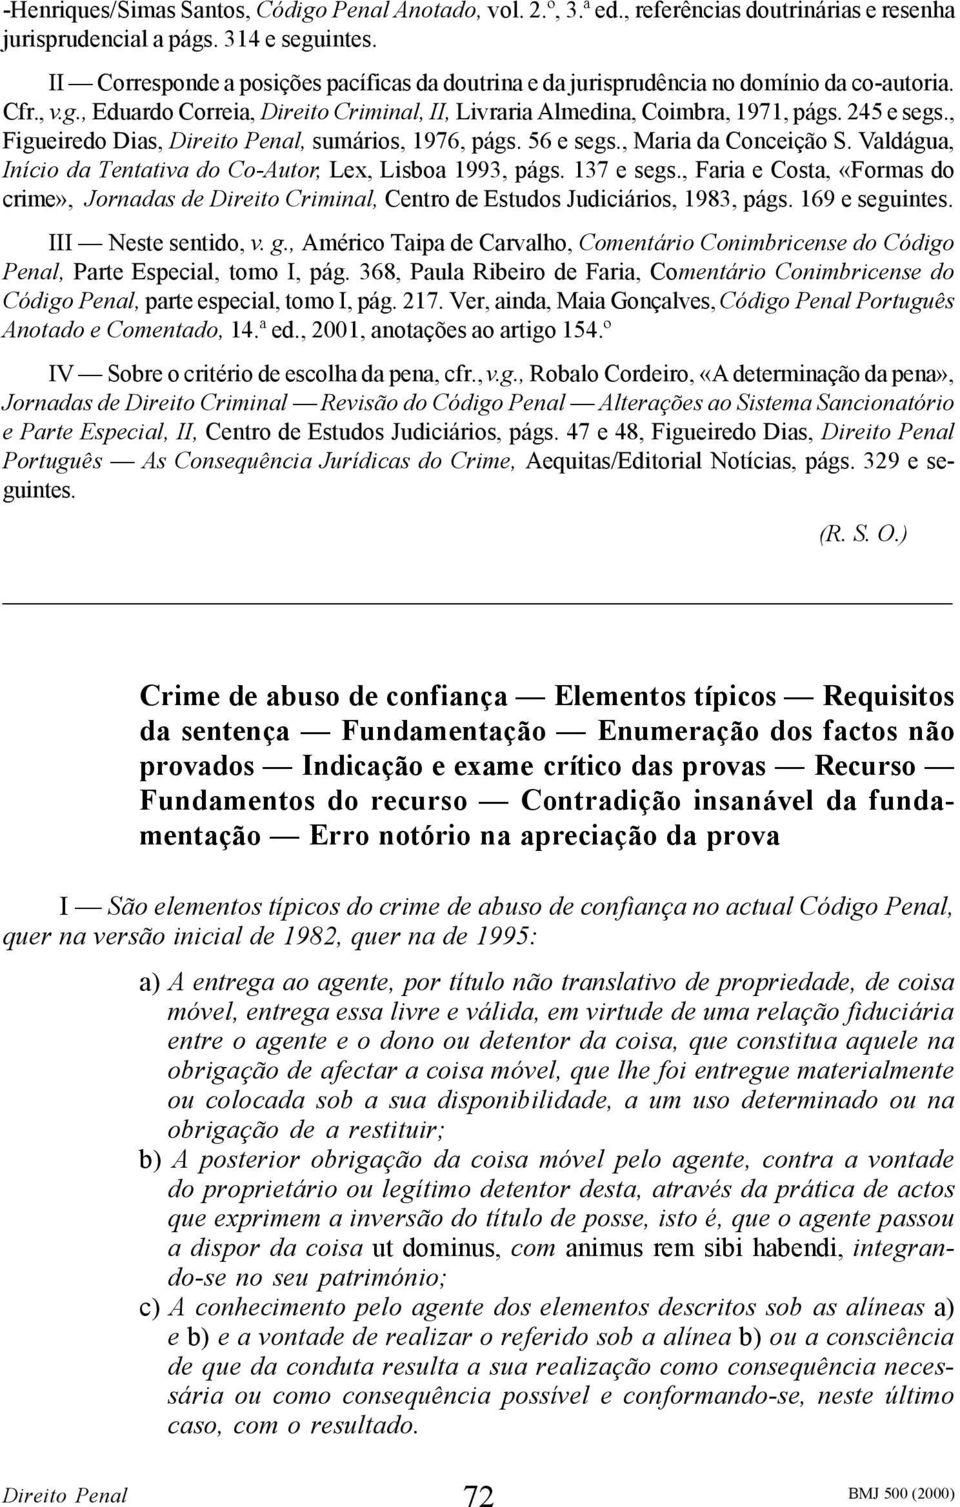 , Figueiredo Dias, Direito Penal, sumários, 1976, págs. 56 e segs., Maria da Conceição S. Valdágua, Início da Tentativa do Co-Autor, Lex, Lisboa 1993, págs. 137 e segs.